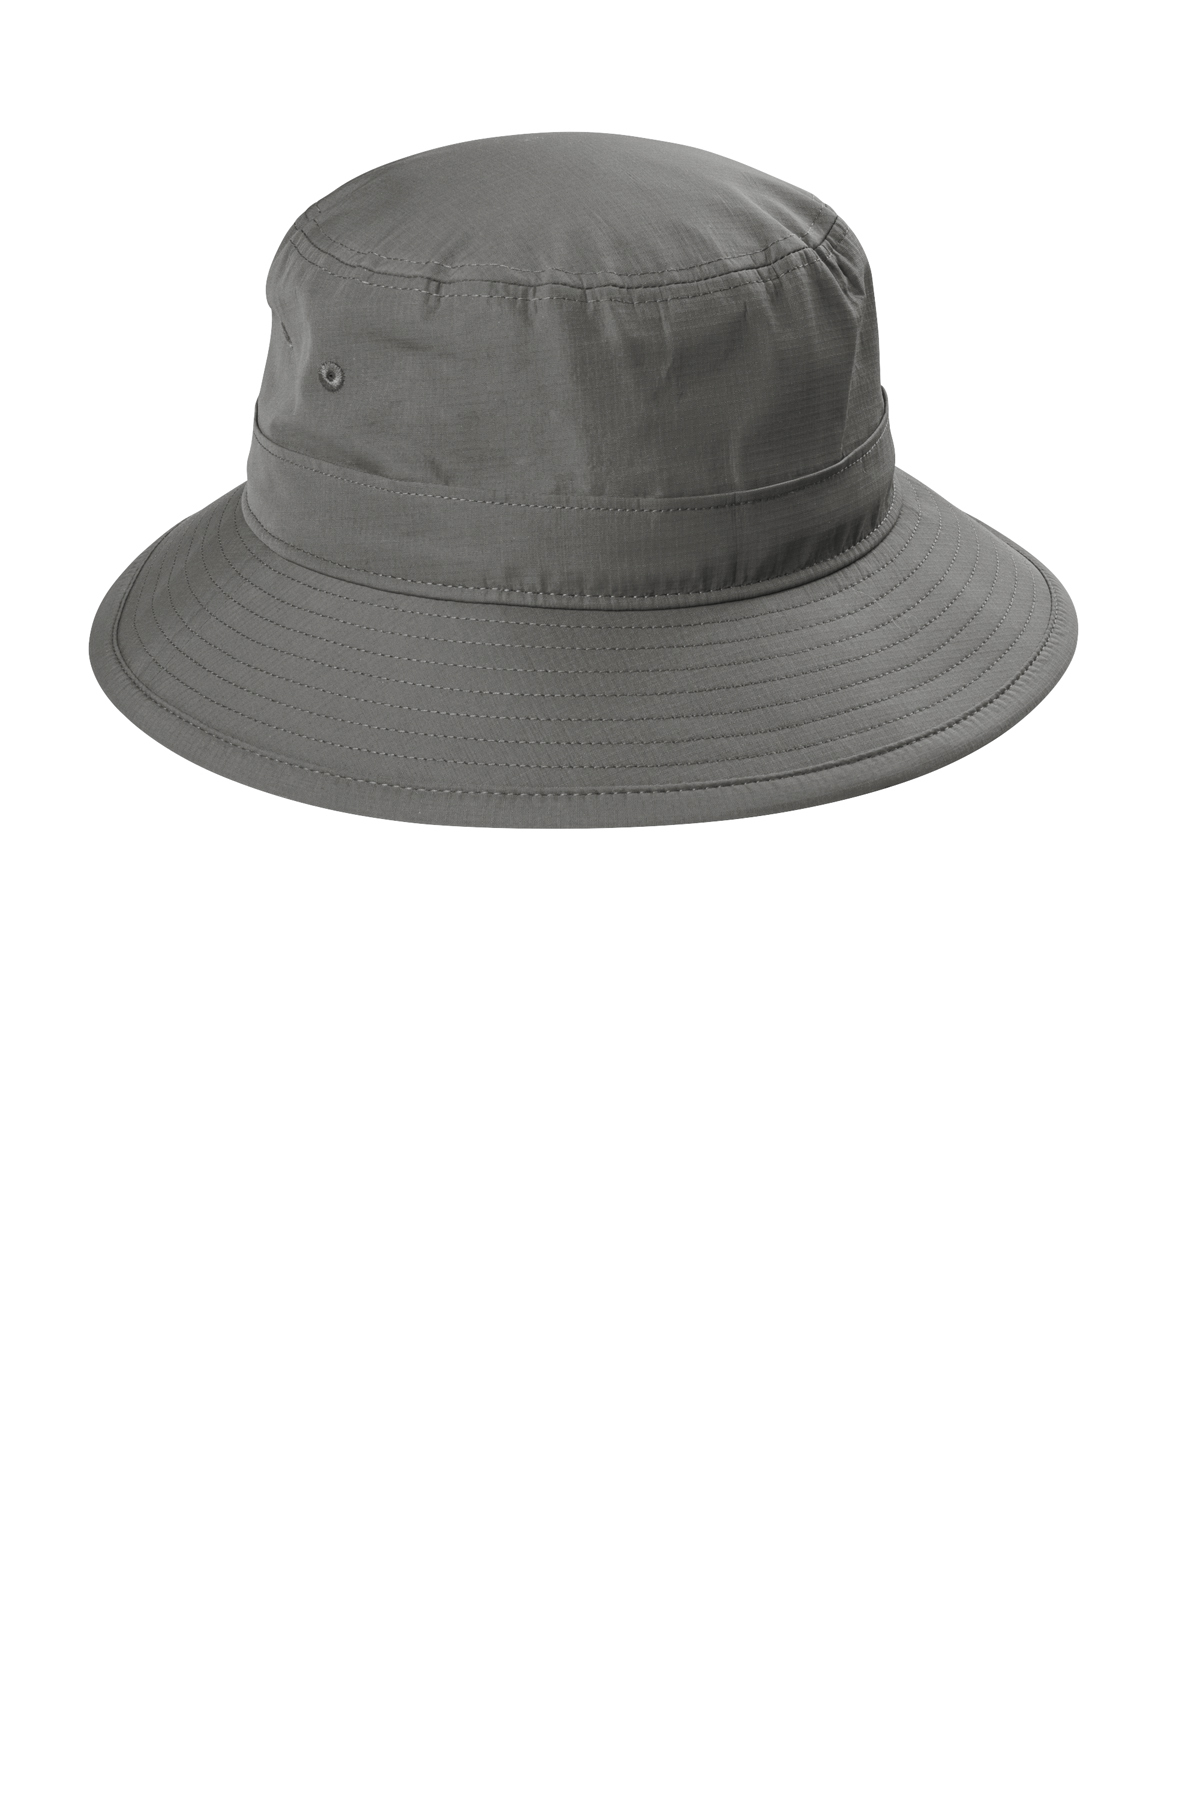 | Authority | Outdoor SanMar Port Hat UV Bucket Product